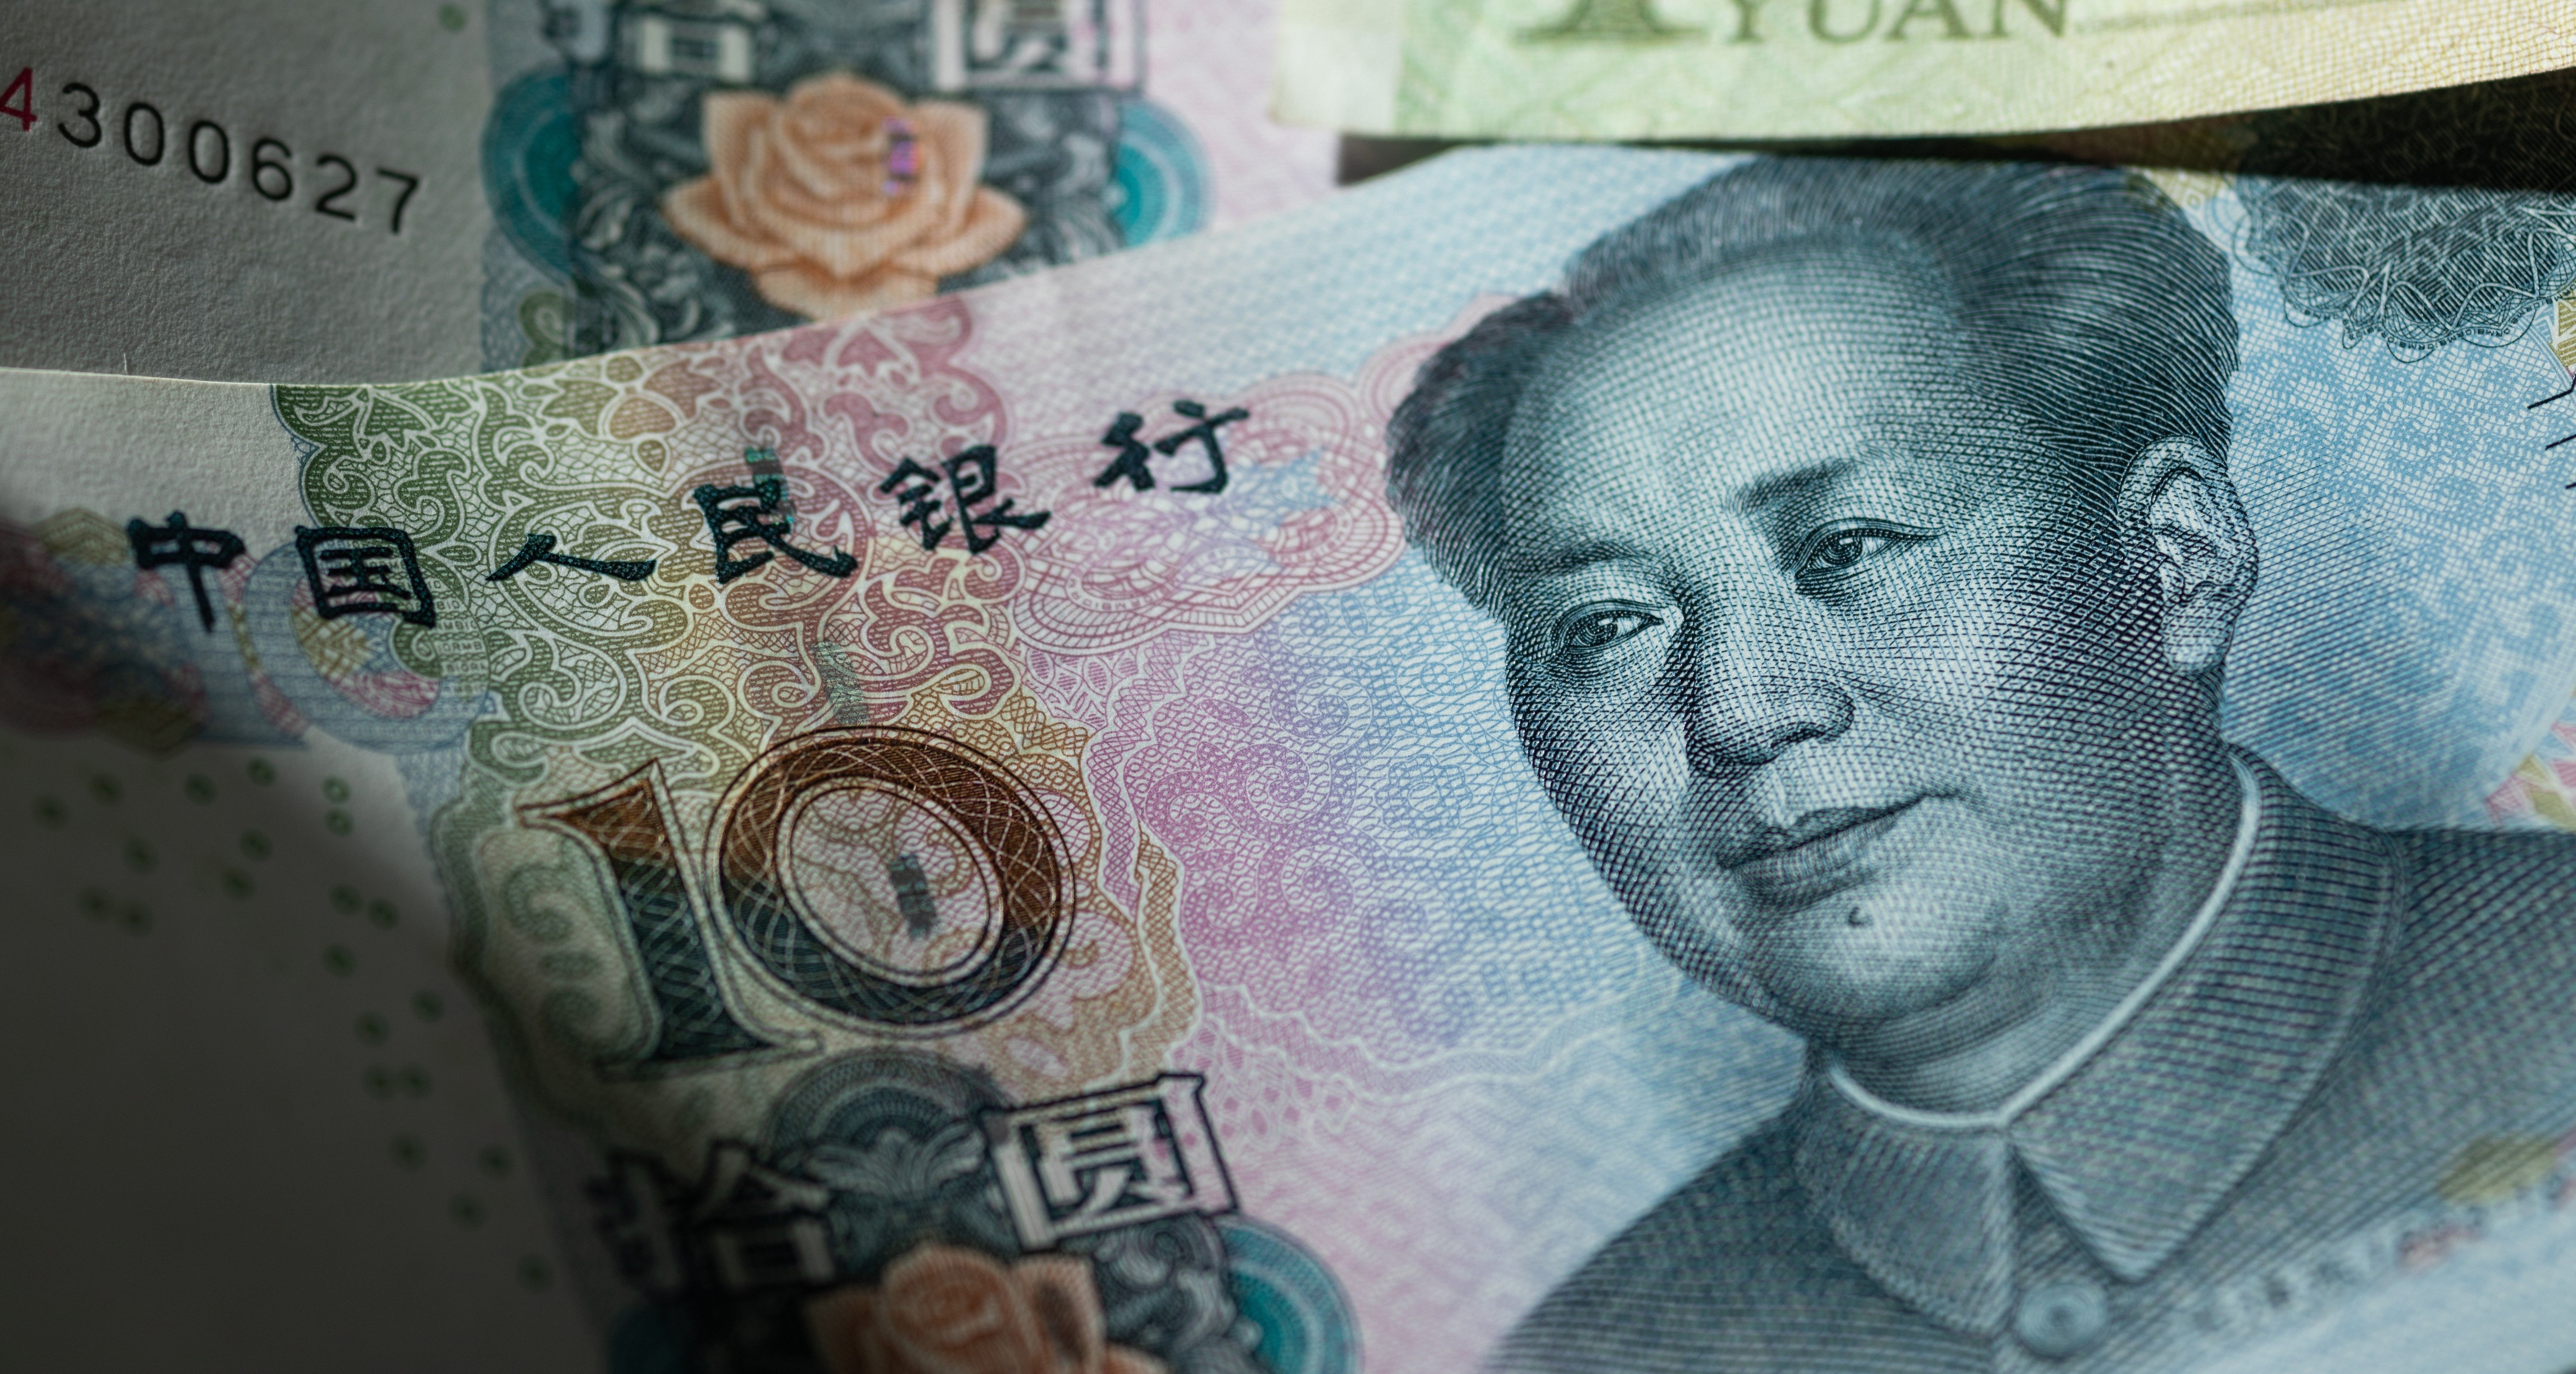 Июань. Китайский юань. Китайский доллар. Юань (валюта). Валюта Китая.